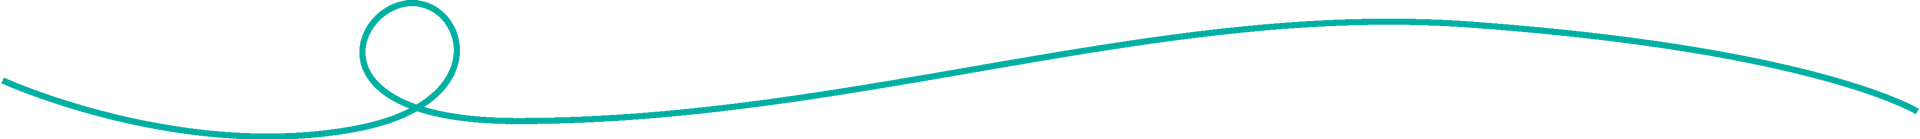 Green teal line divider